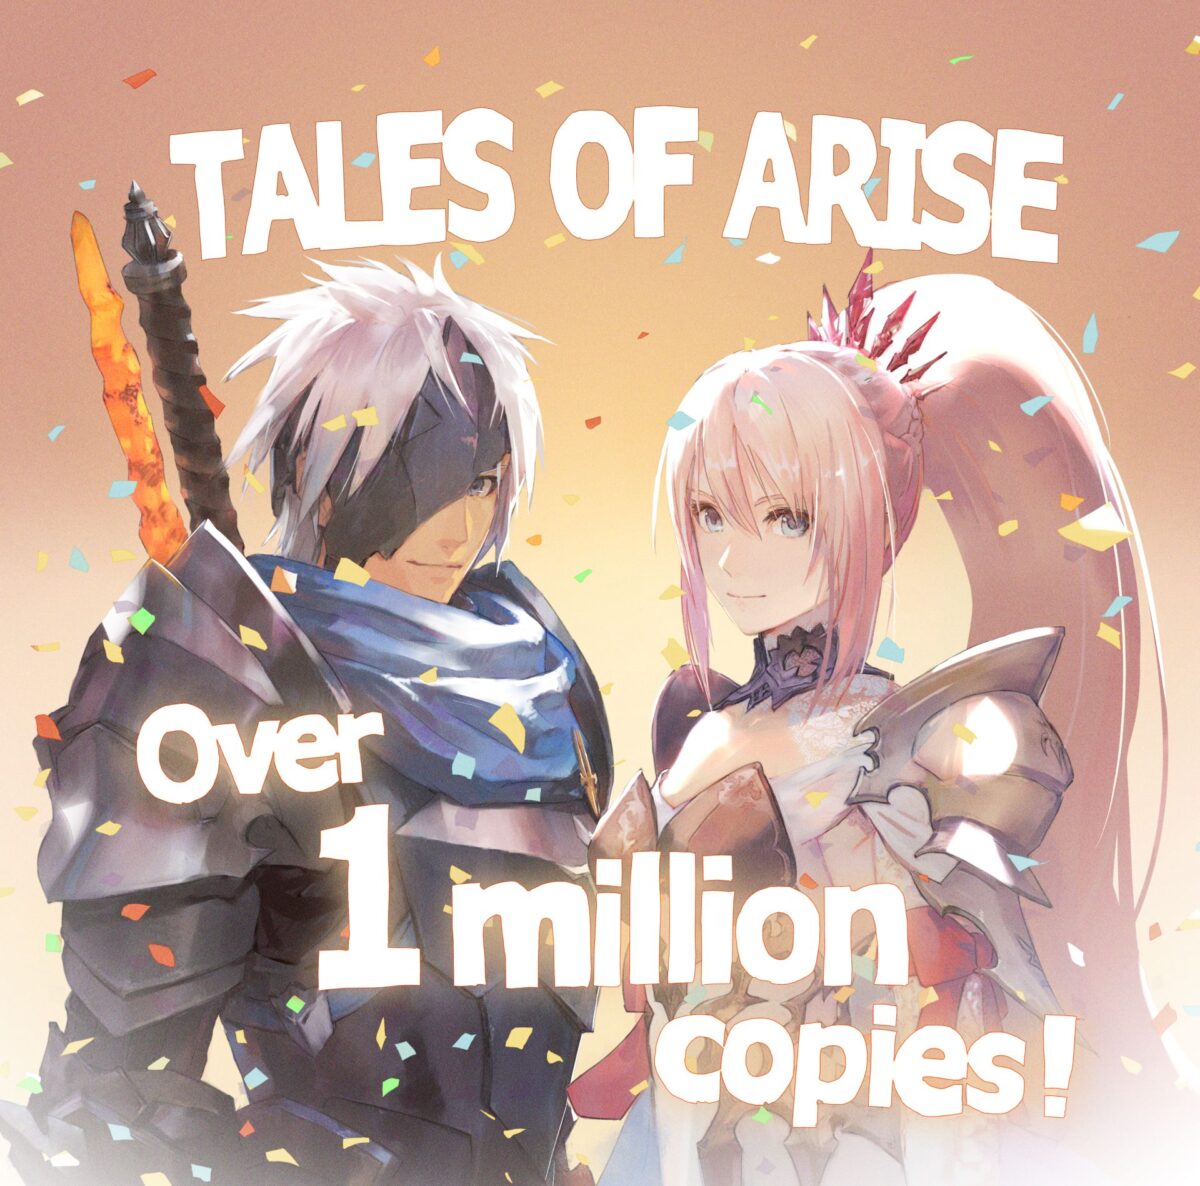 Tales of Arise arriva a 1 milione di copie vendute thumbnail